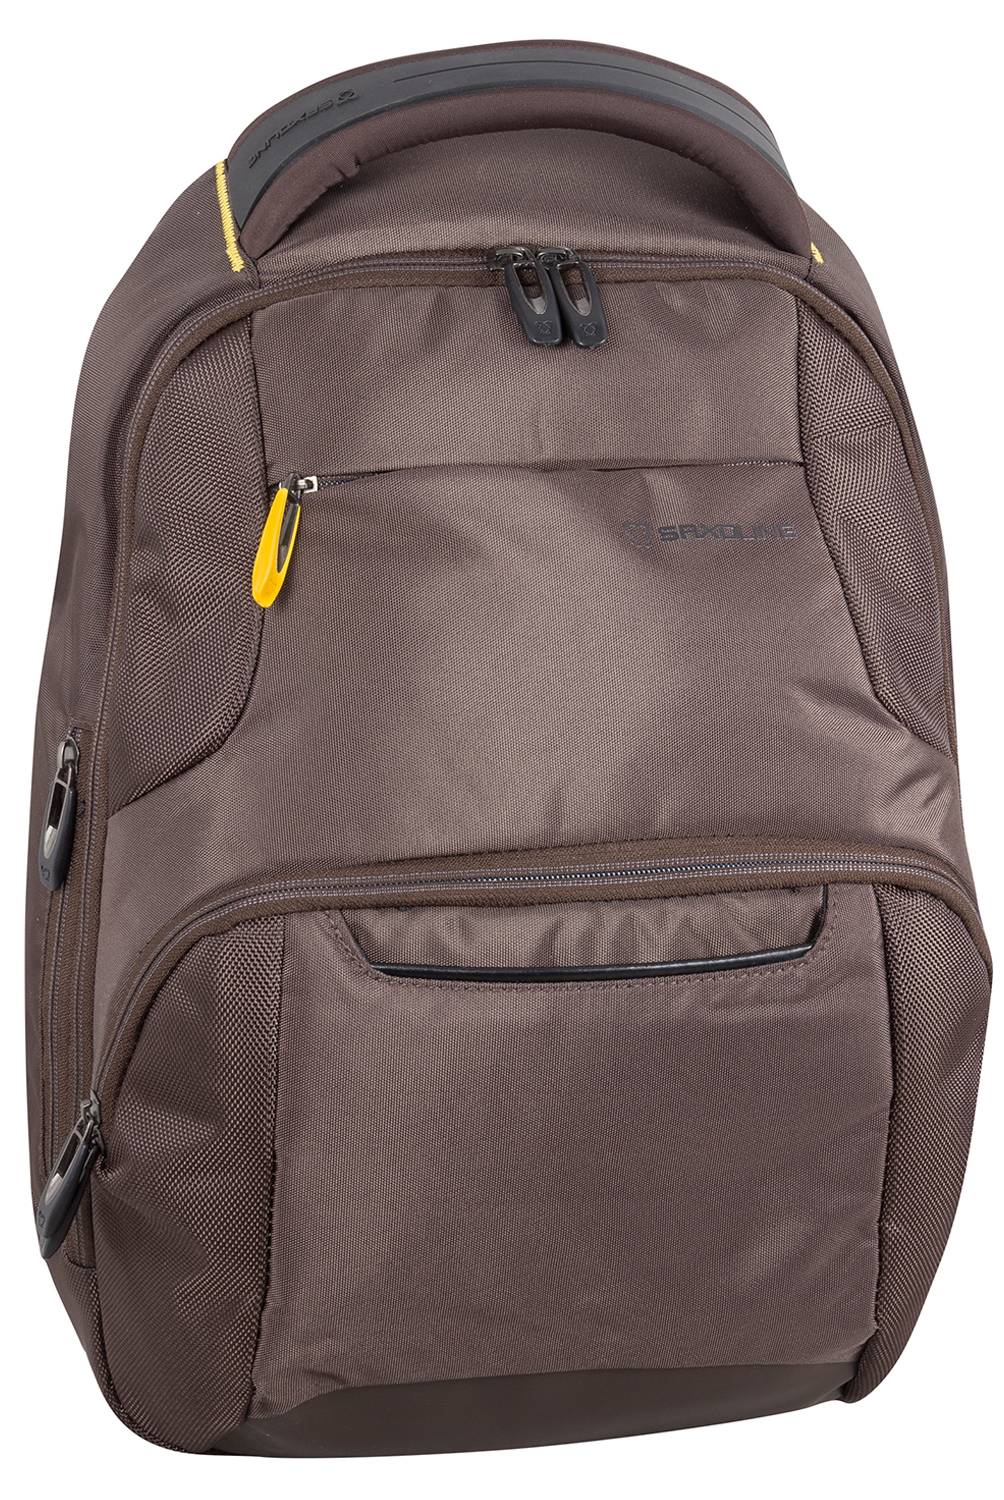 SAXOLINE - Laptop Backpack Nikkei 495 Tabaco